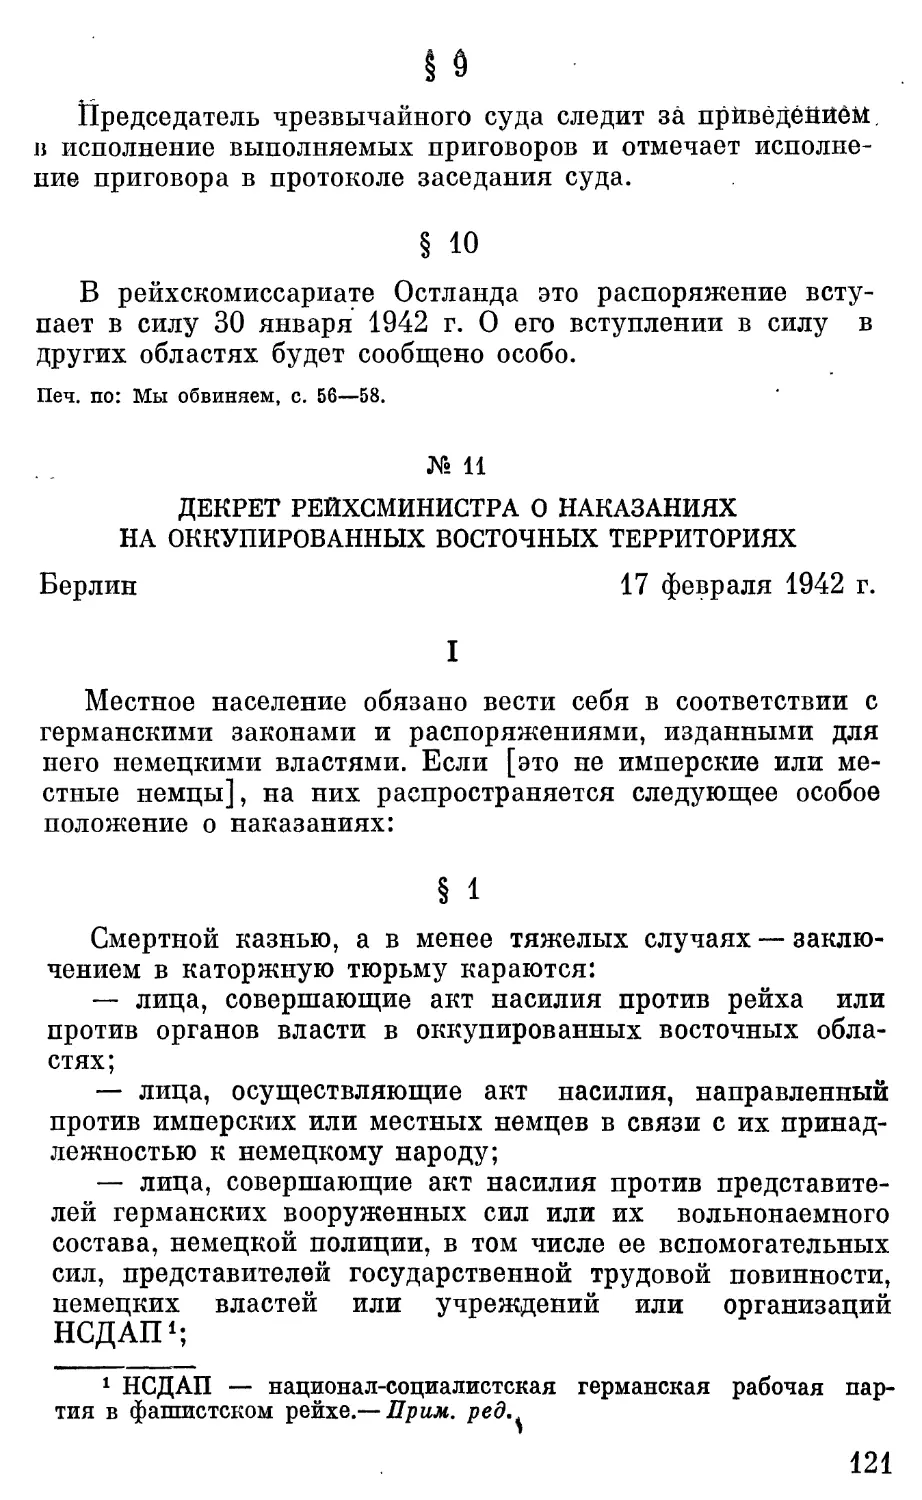 Декрет рейхсминистра о наказаниях на оккупированных восточных территориях.